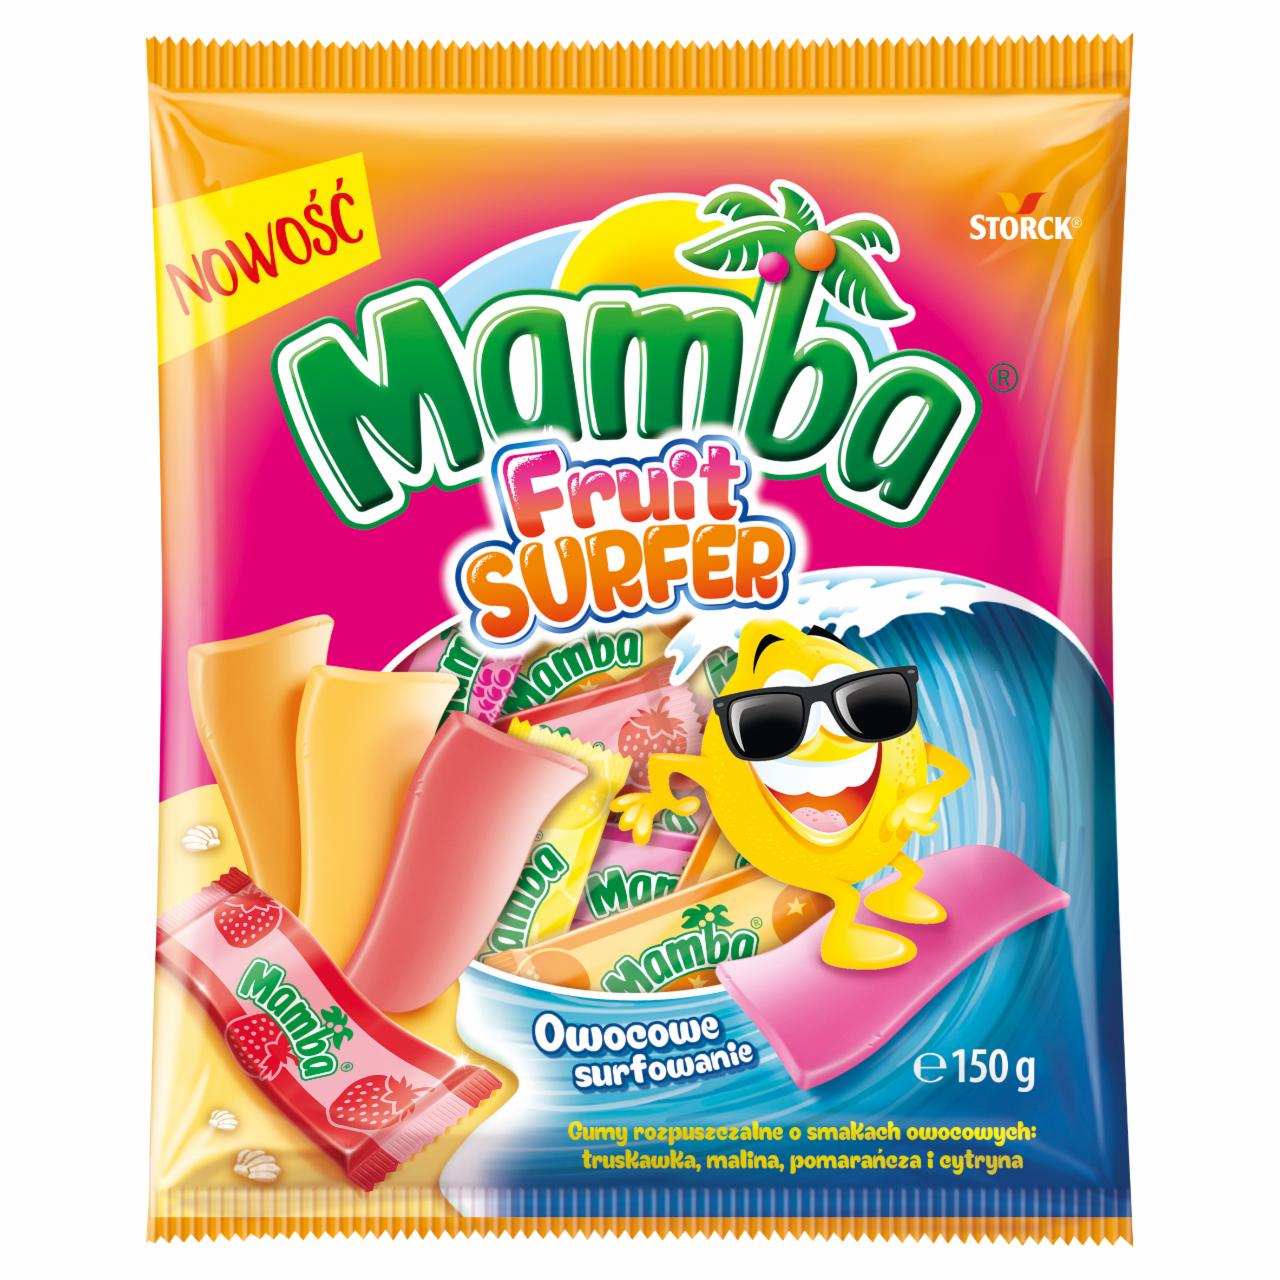 Zdjęcia - Mamba Fruit Surfer Gumy rozpuszczalne o smakach owocowych 150 g